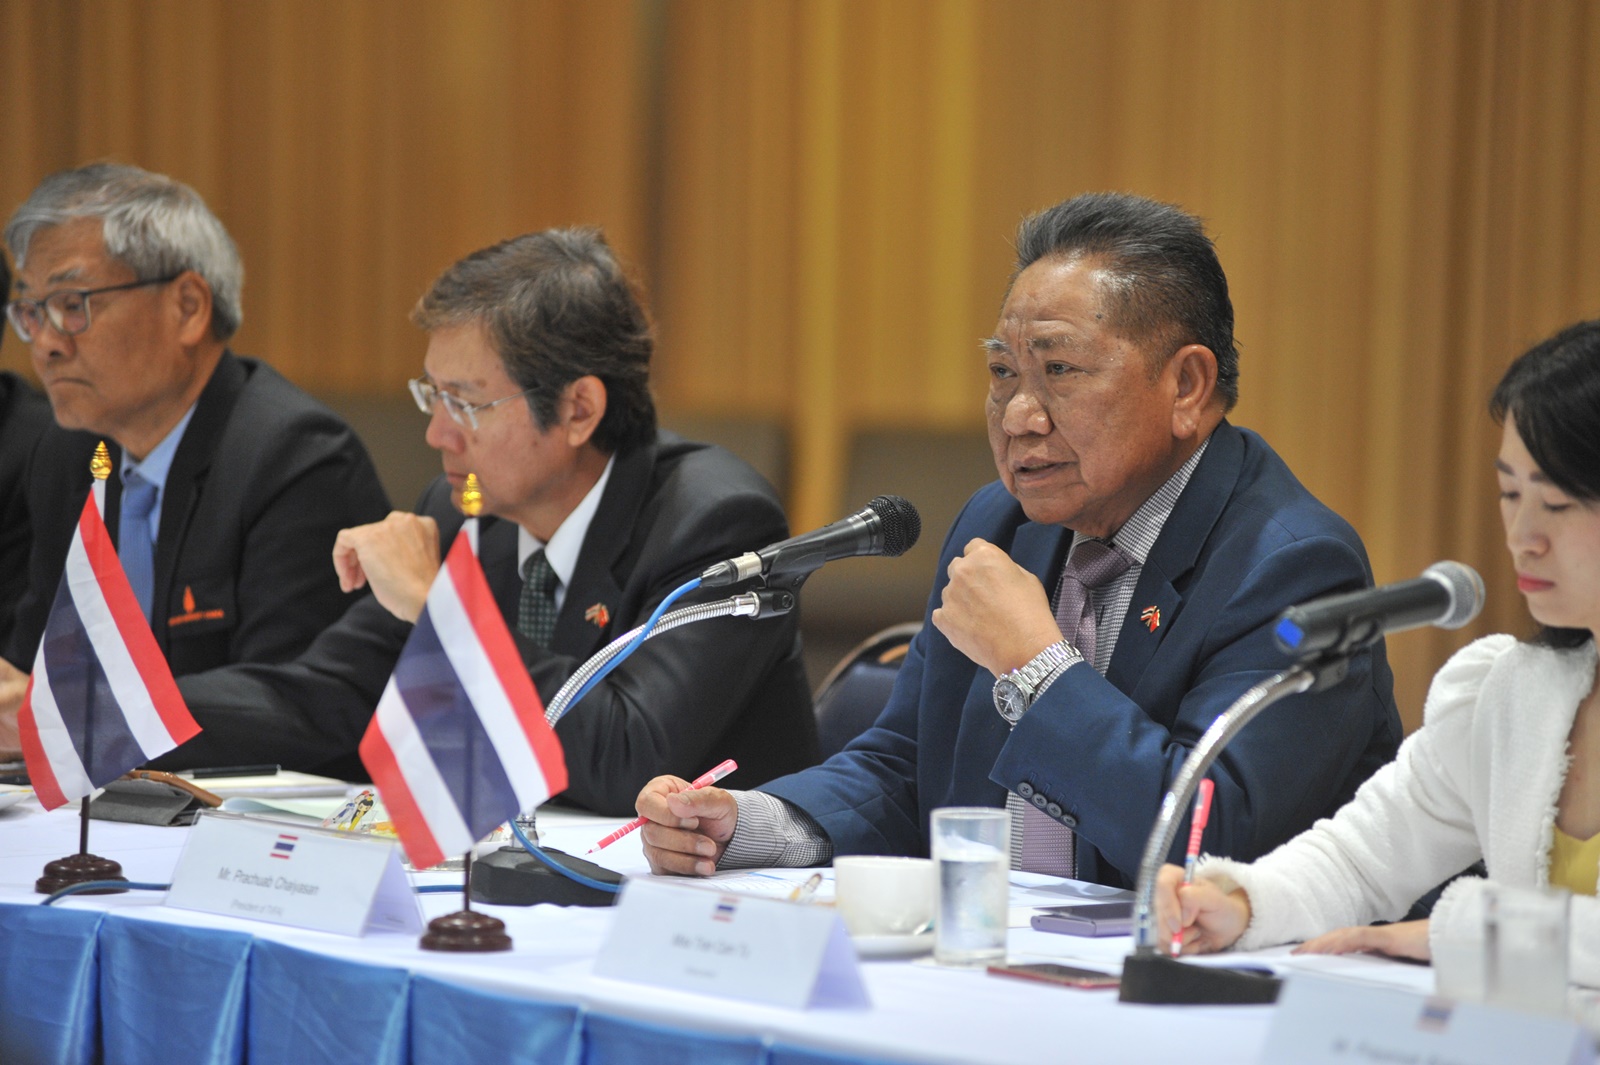 สมาคมมิตรภาพไทย – เวียดนาม  จัดประชุมร่วมกับผู้แทนฝ่ายเวียดนาม